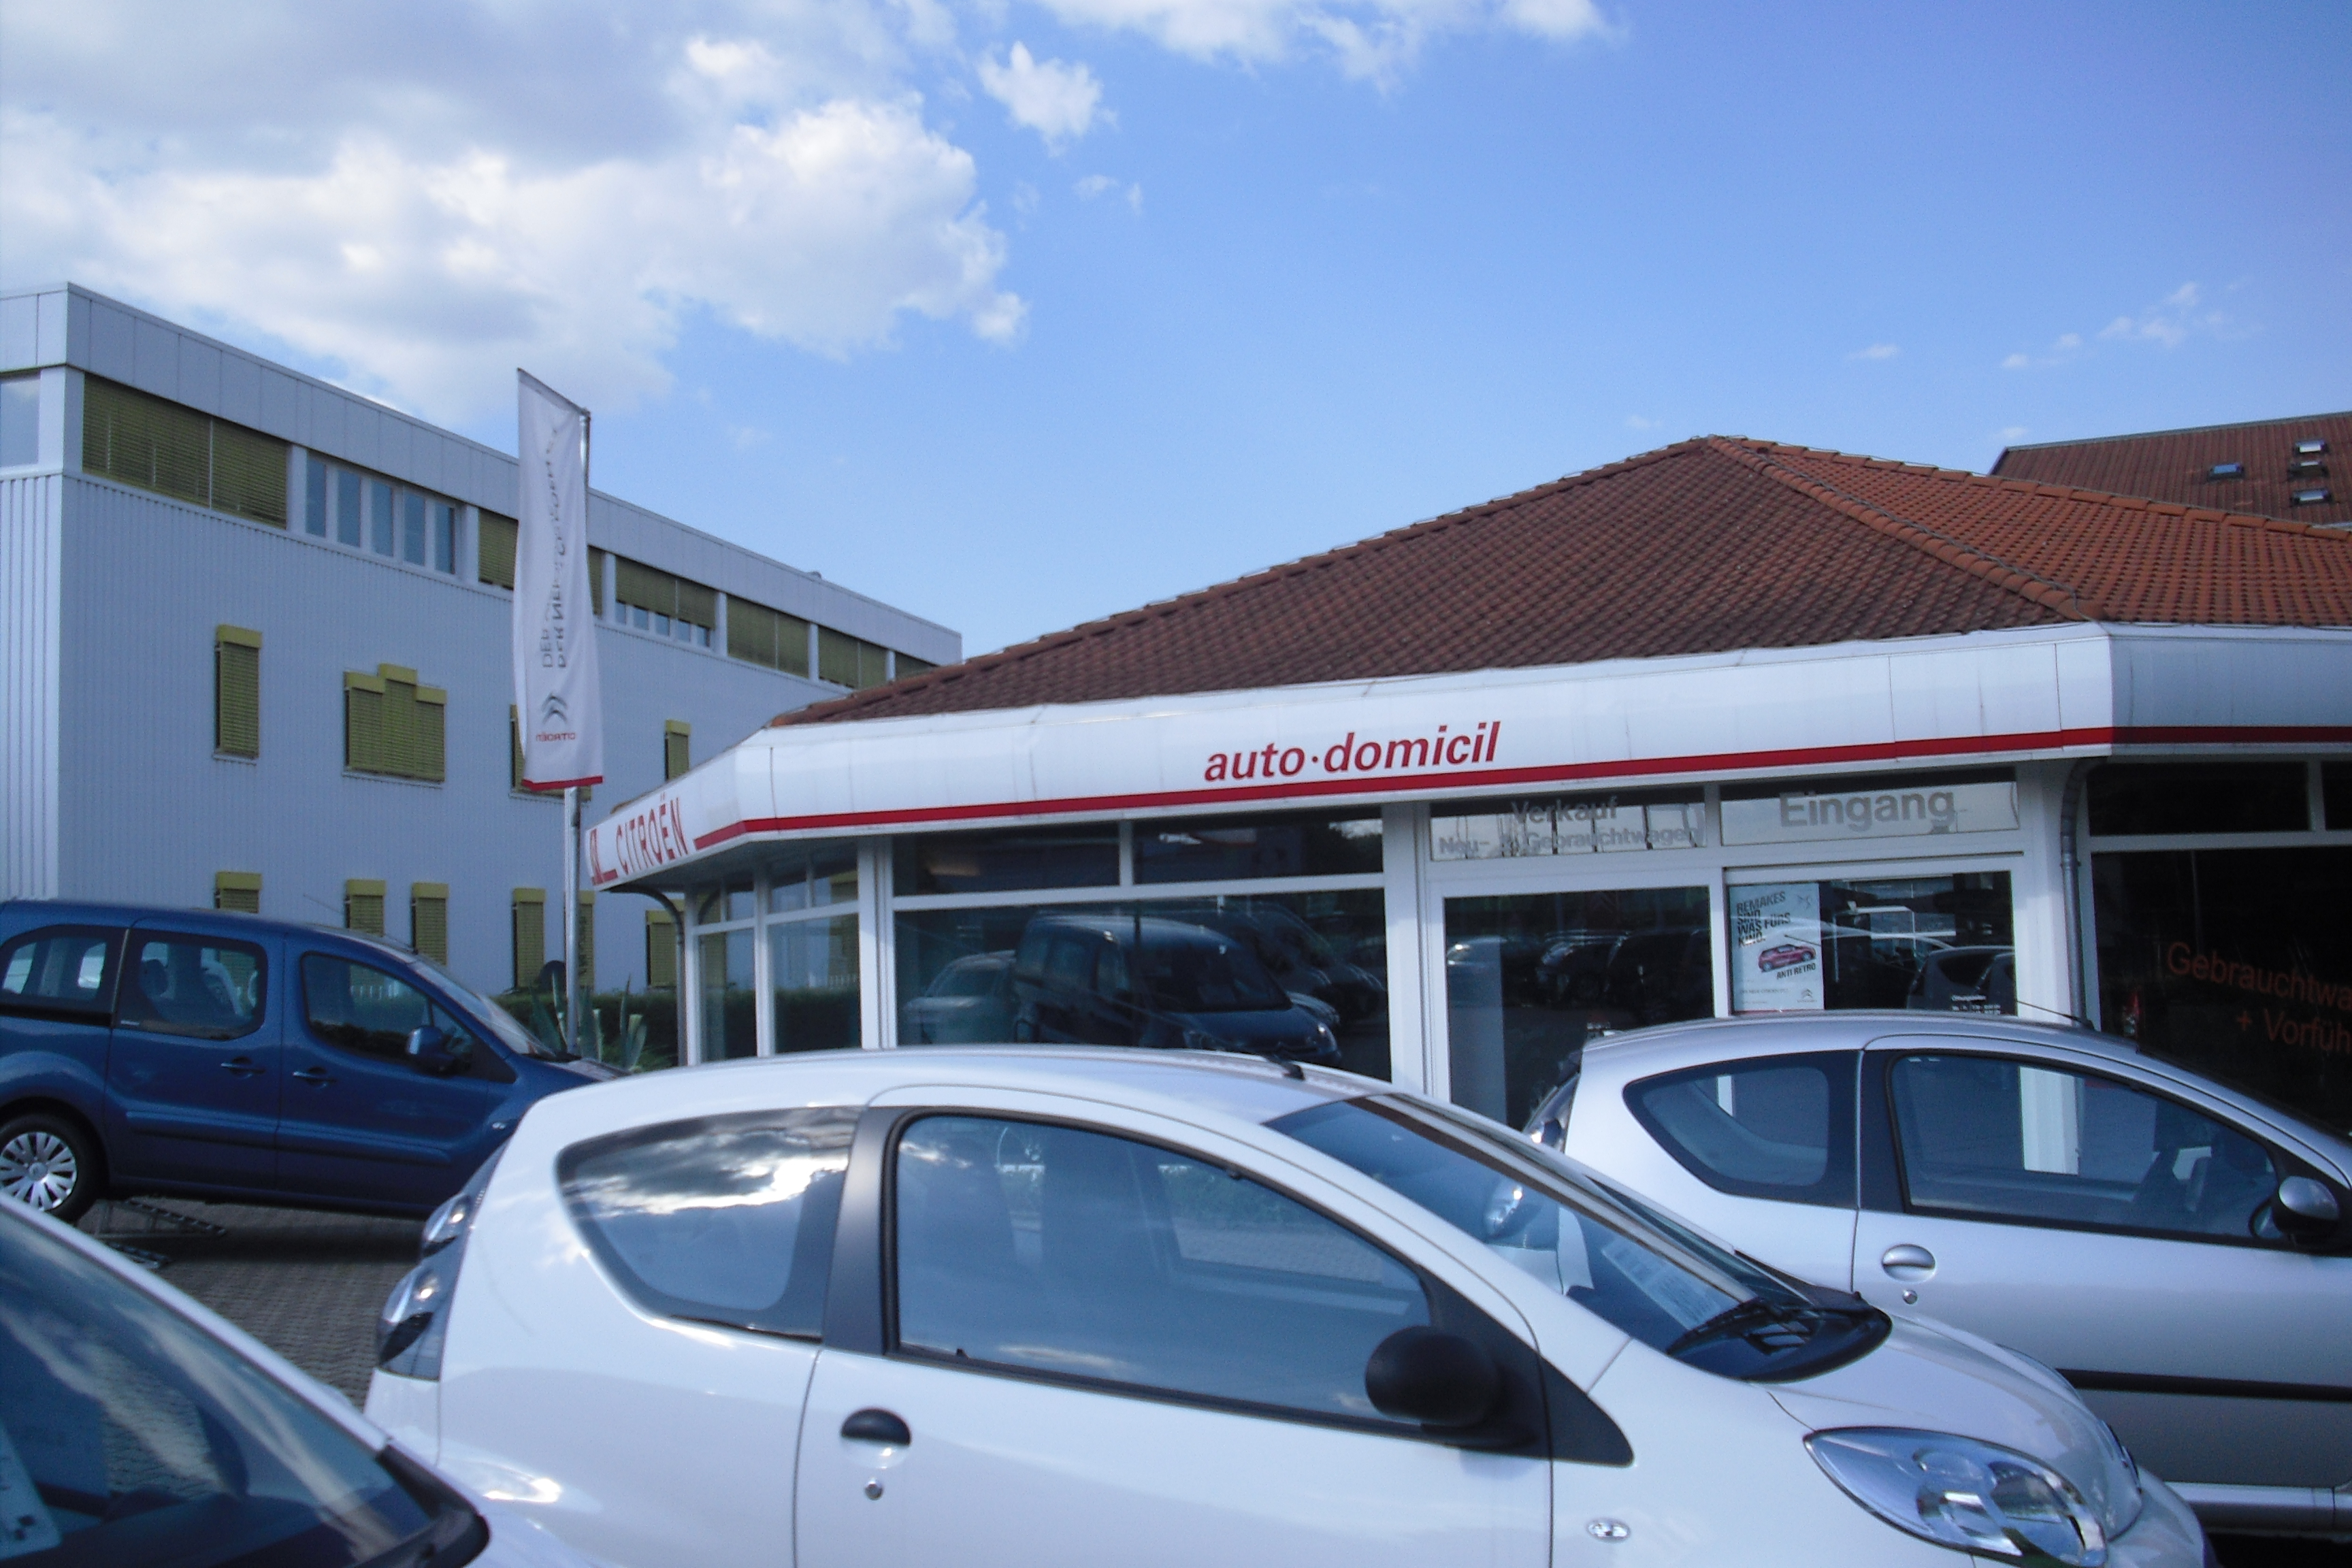 Bild 1 Autodomicil Reutlingen GmbH in Reutlingen